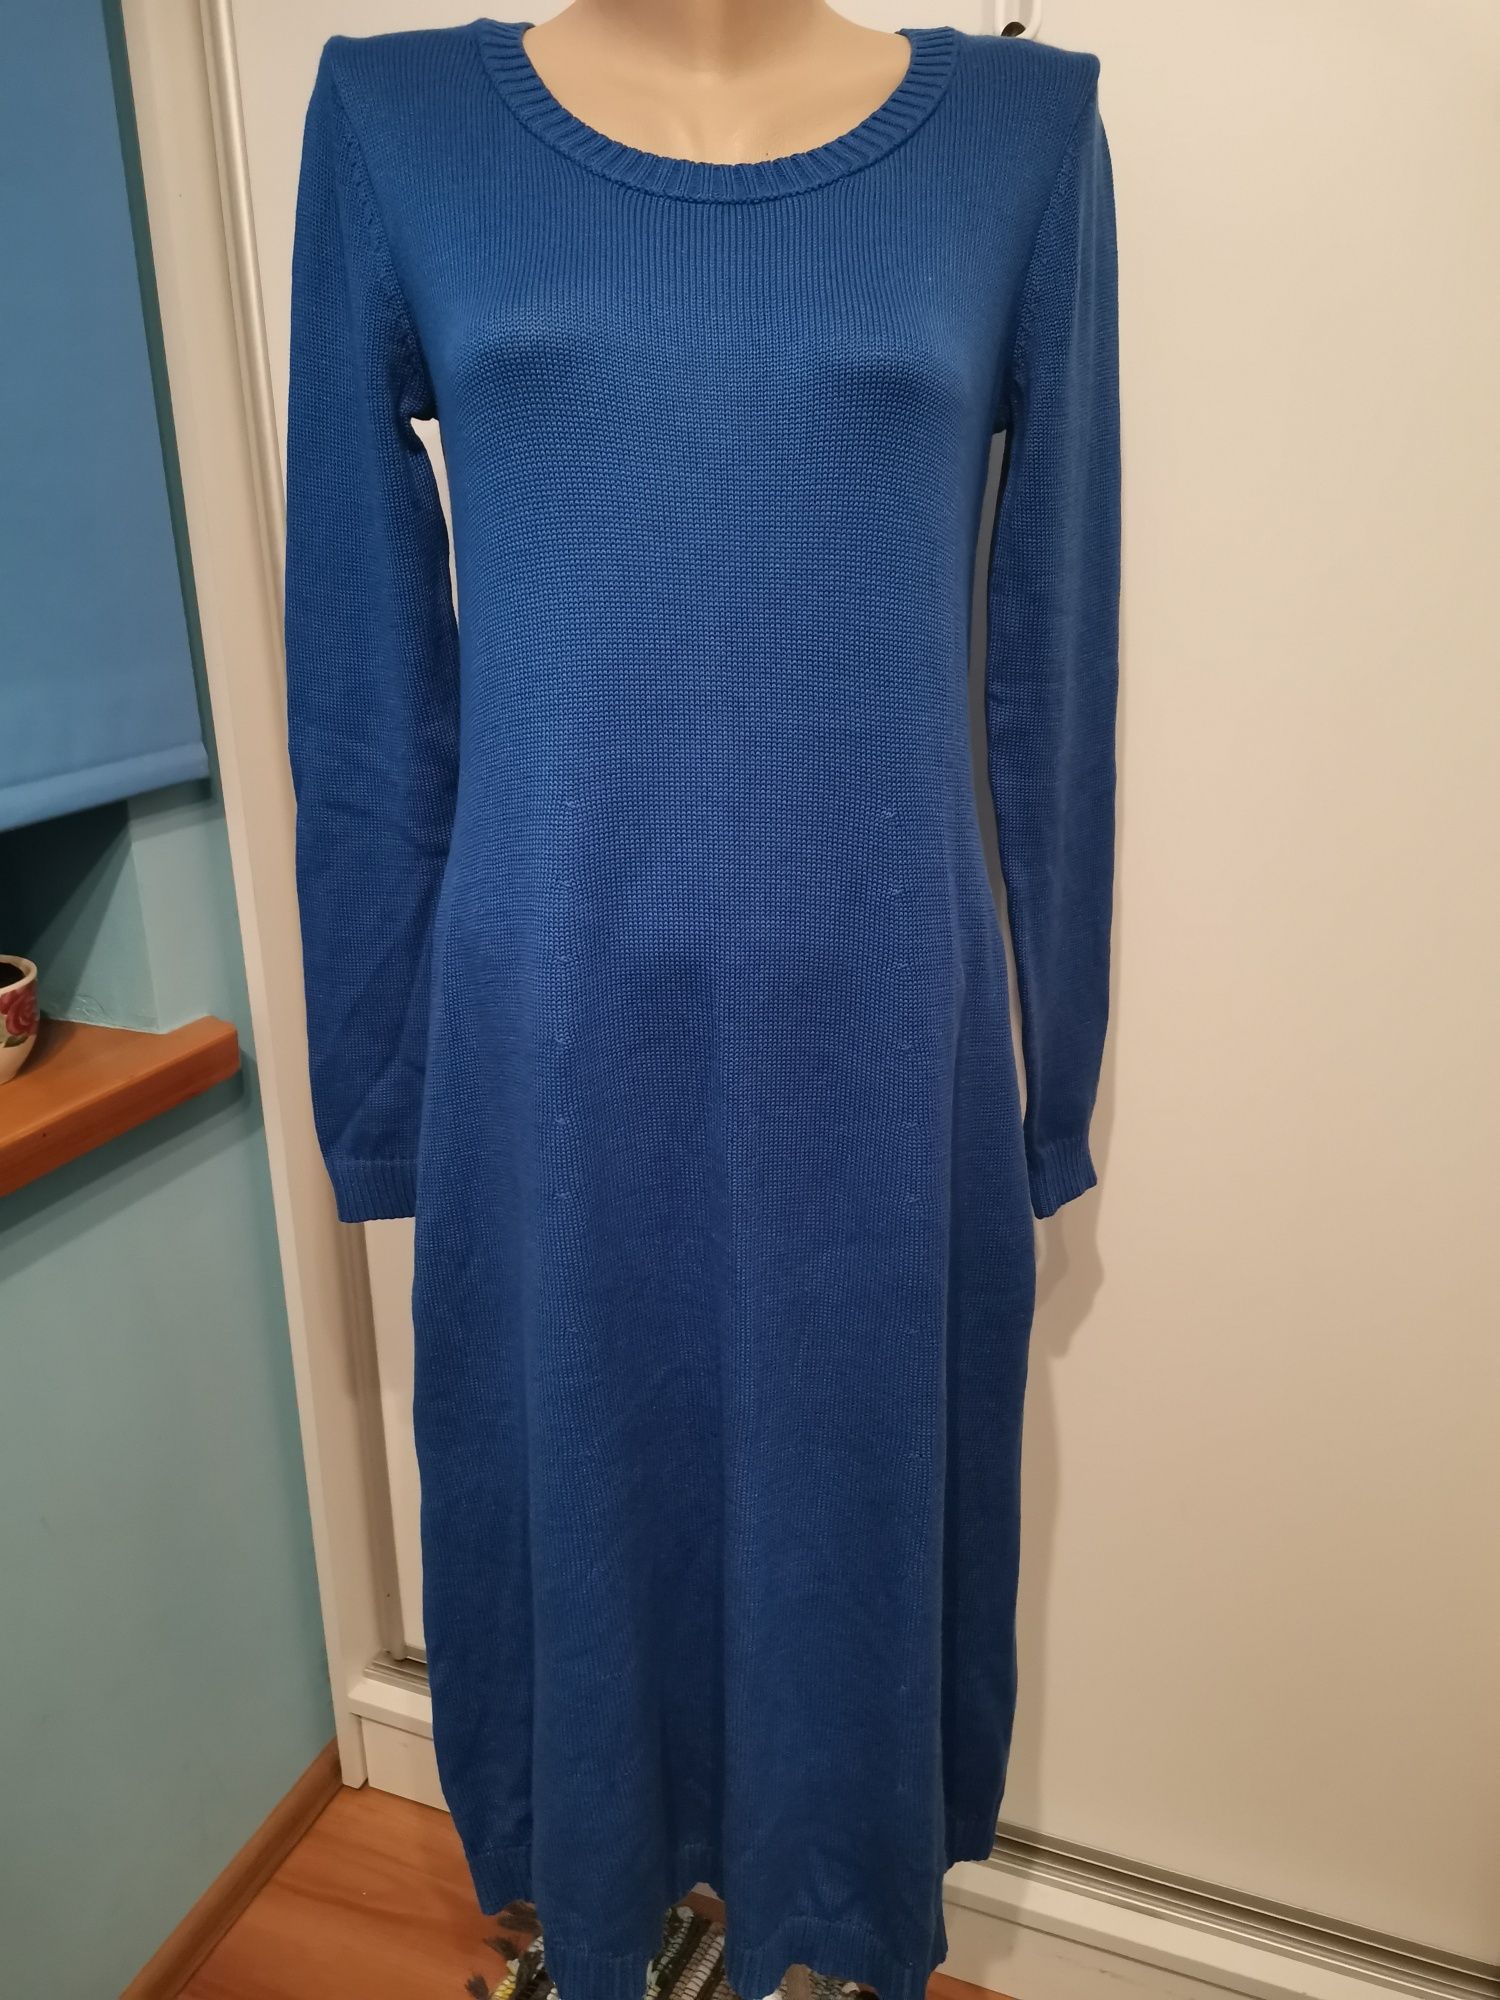 Bonprix Collection dzianinowa sukienka damska rozm 36/38, niebieska